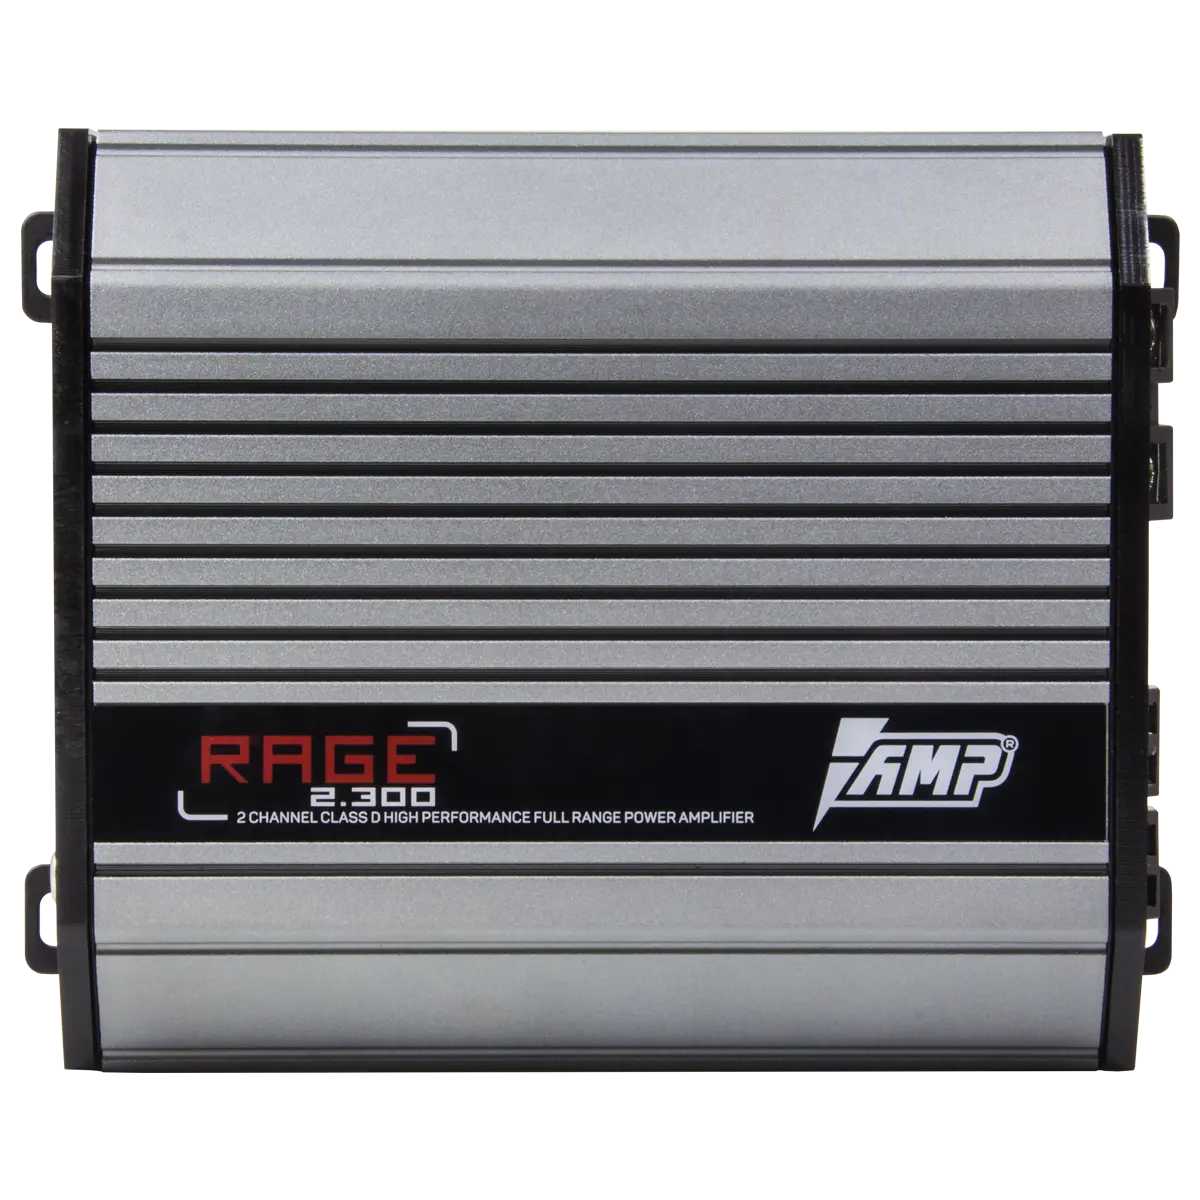 Усилитель AMP RAGE 2.300 купить в интернет магазине AMPGROUP.  Усилитель AMP RAGE 2.300   цены, большой каталог, новинки.
